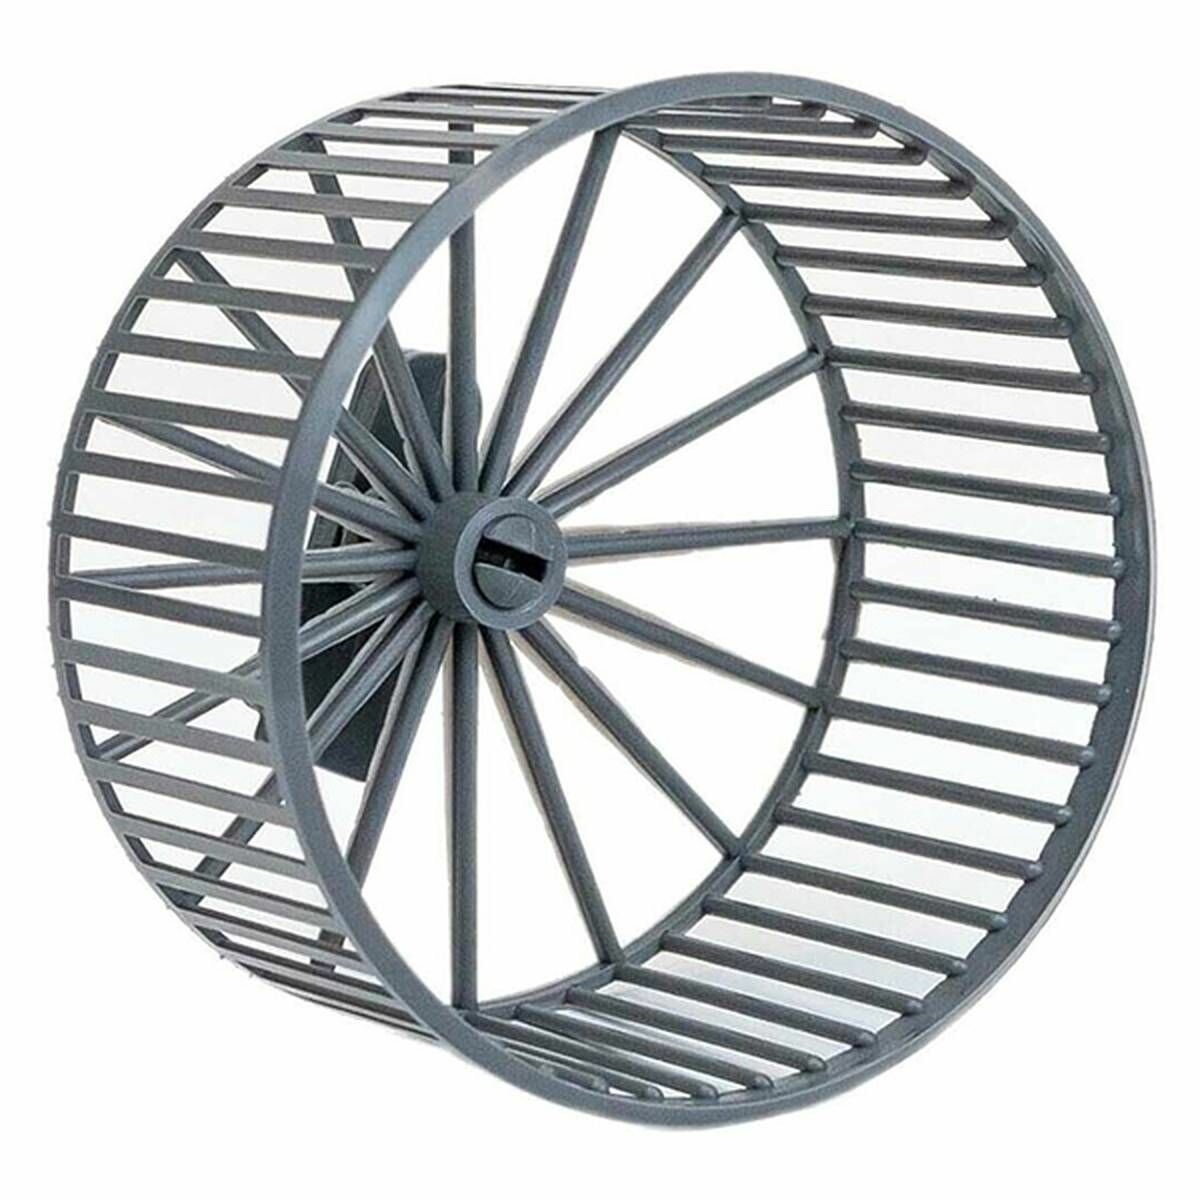 Игрушка для грызунов Дарэлл - колесо пластиковое, d-9 см, без подставки, цвет серый, 1 шт